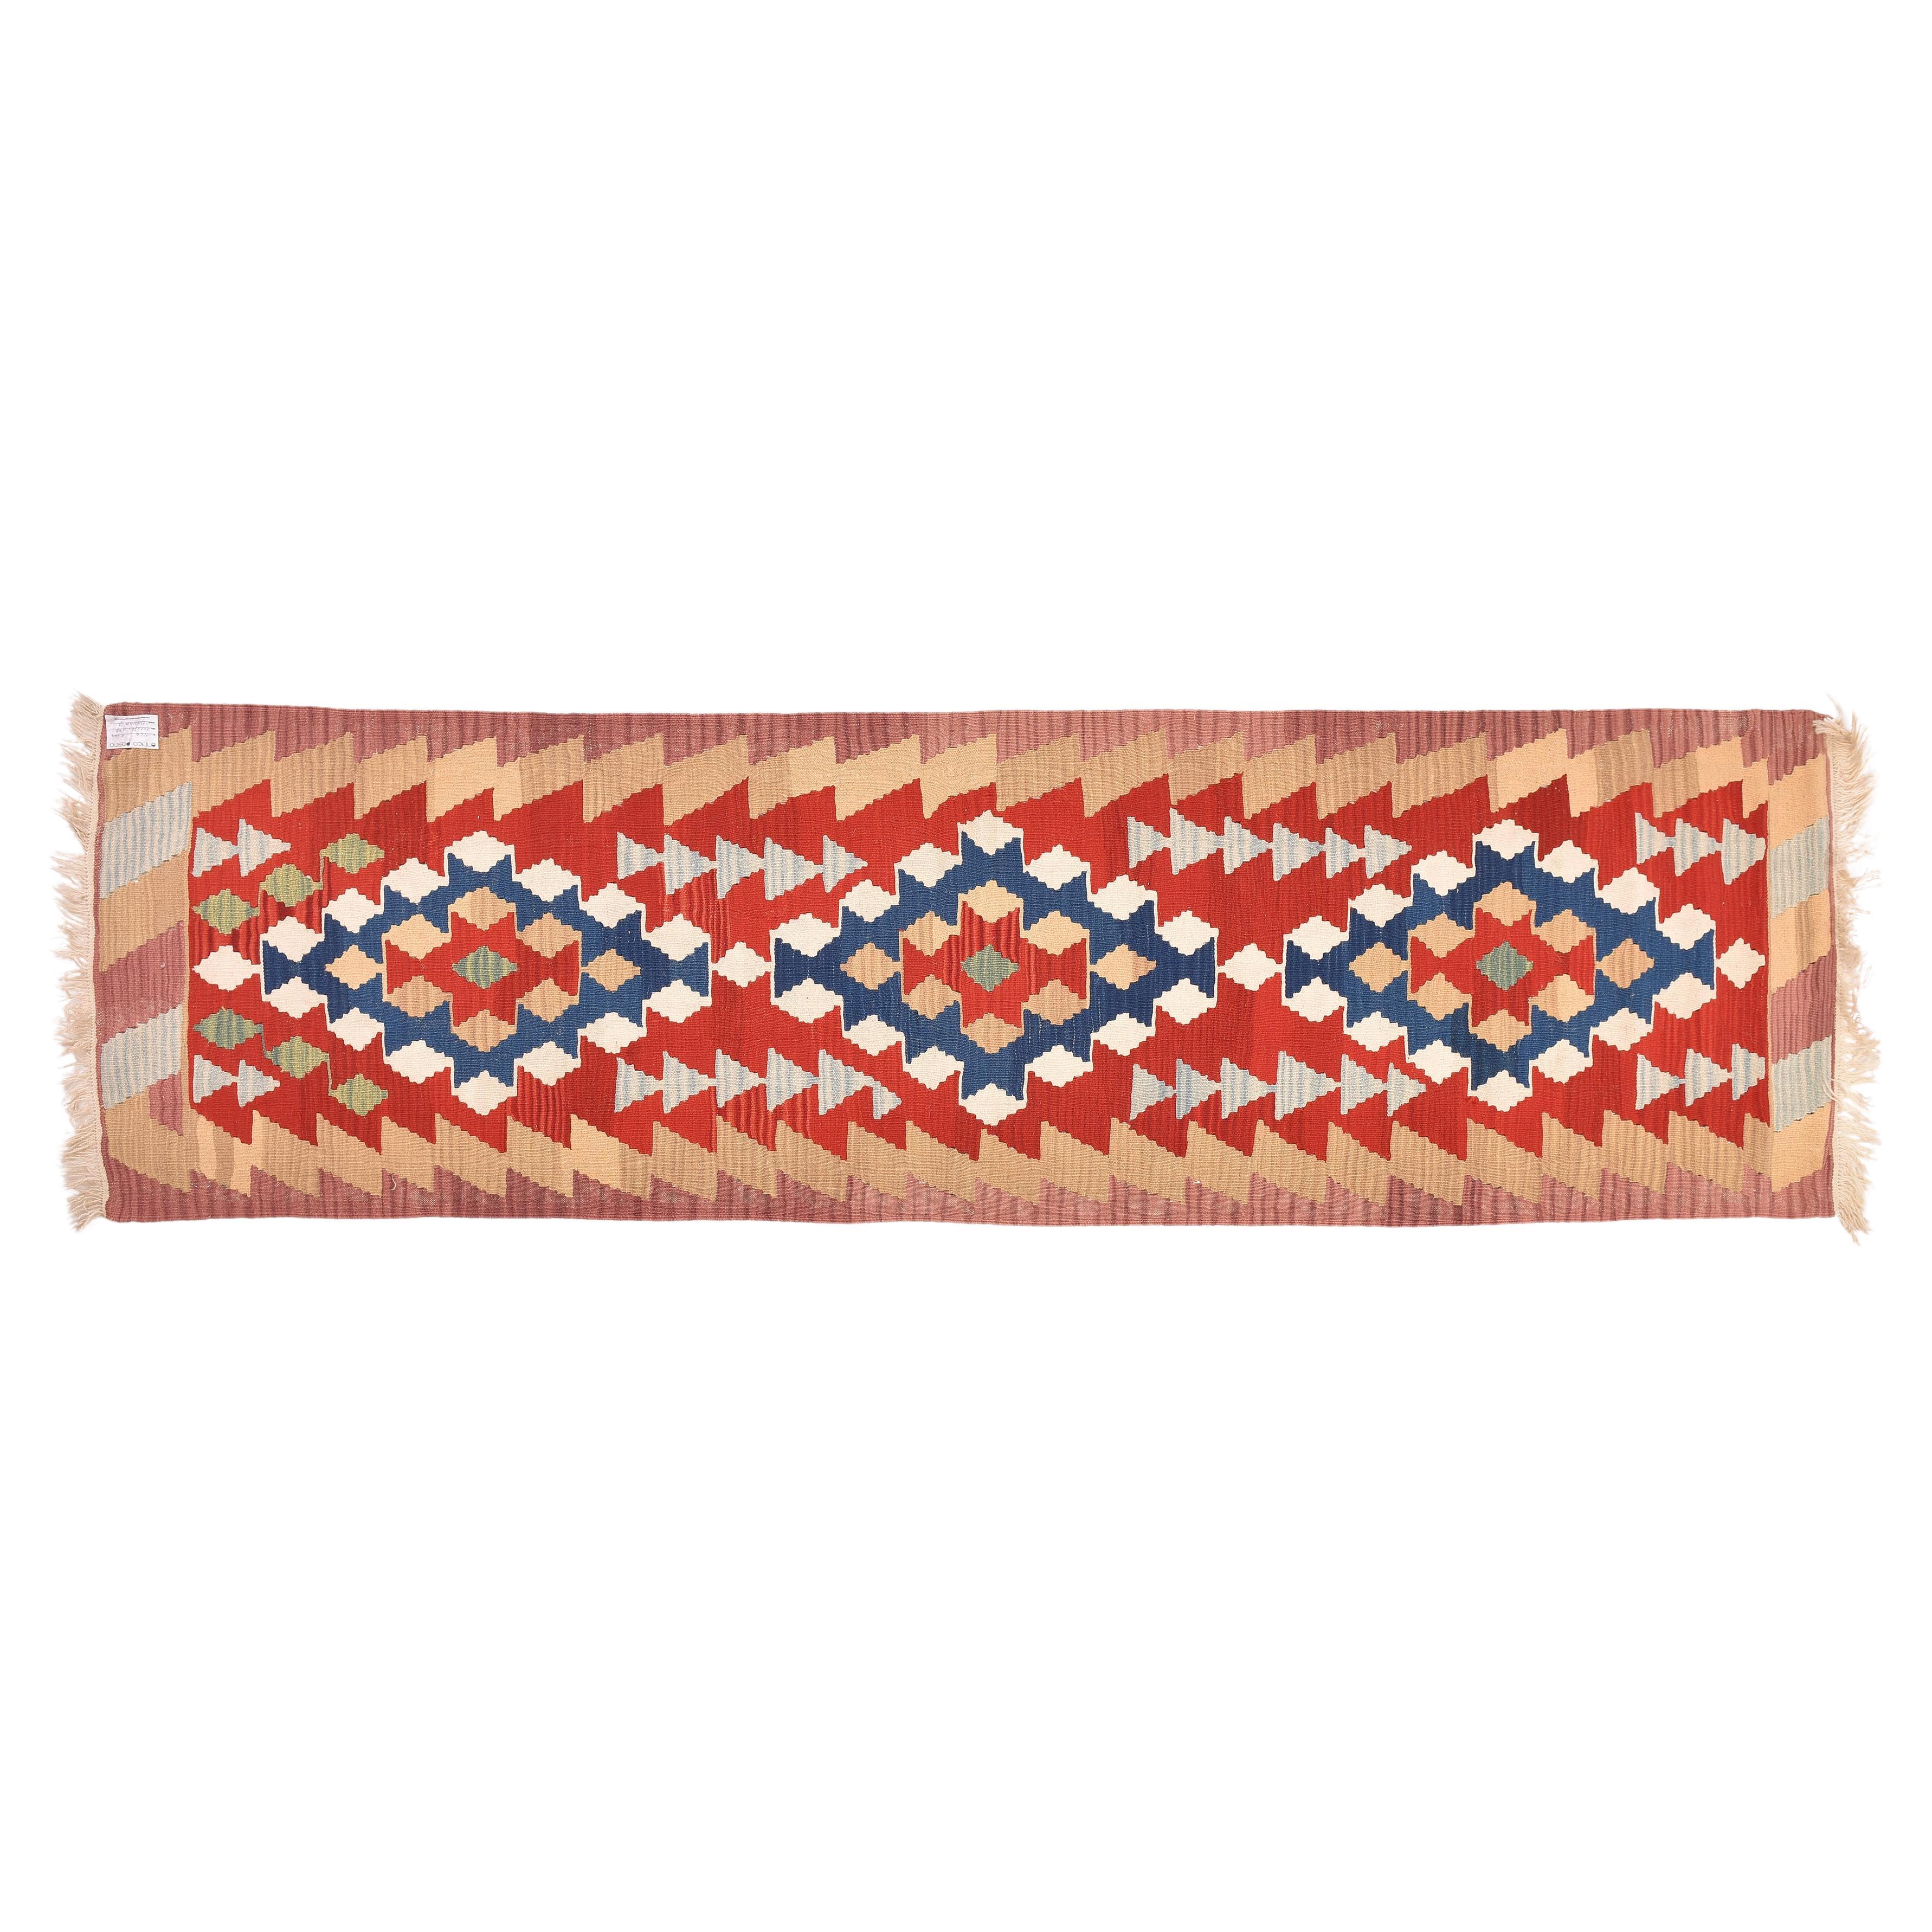 nr. 1144 -  Magnifique chemin de roulement en kilim turc, aux couleurs gaies (rouge, blanc, bleu) en trois médaillons géométriques, enfermés dans une bordure rose et camel.  Robuste et agréable, à un bon prix.